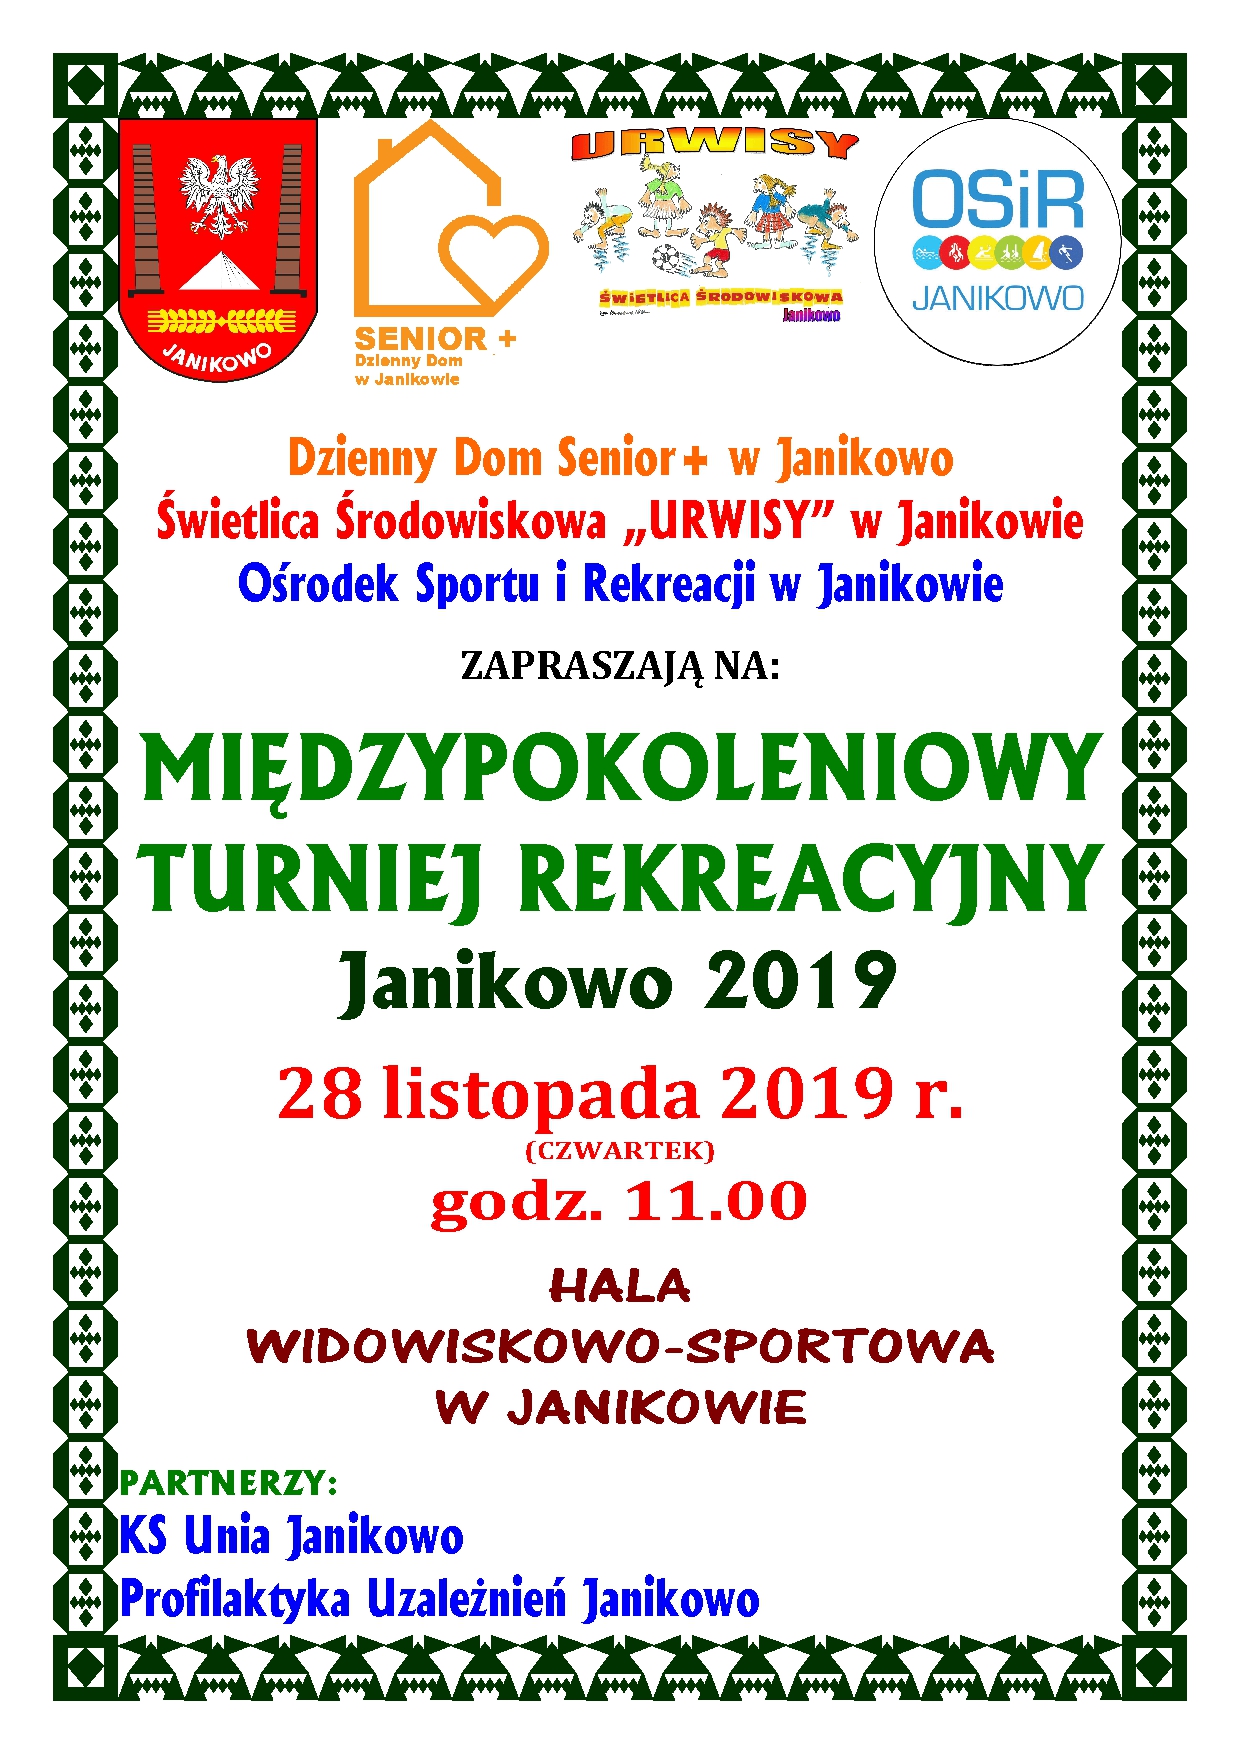 Read more about the article Międzypokoleniowy Turniej Rekreacyjny